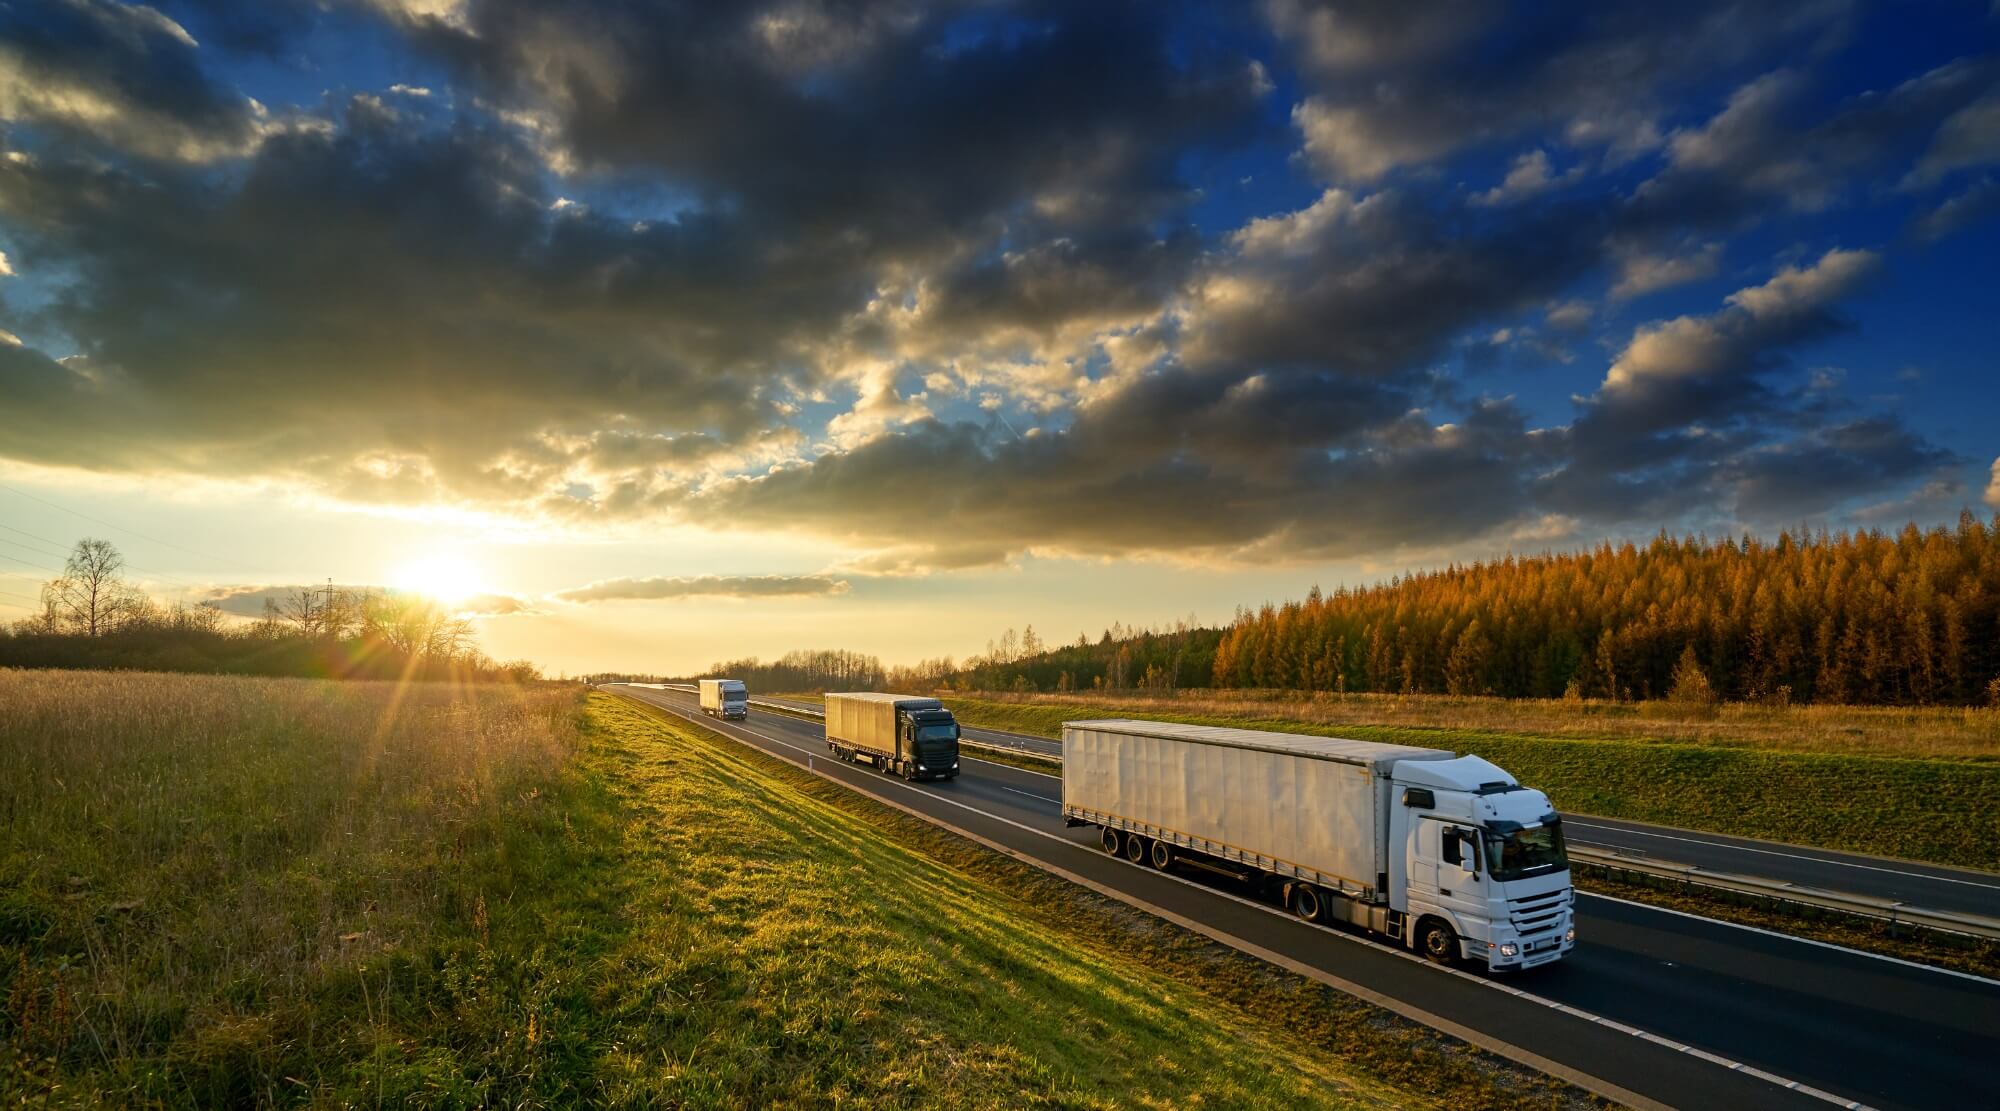 Jak długo trzeba mieć firmę żeby dostać leasing - obrazek przedstawia ciężarówki, które firma transportowa może wziąć w leasing